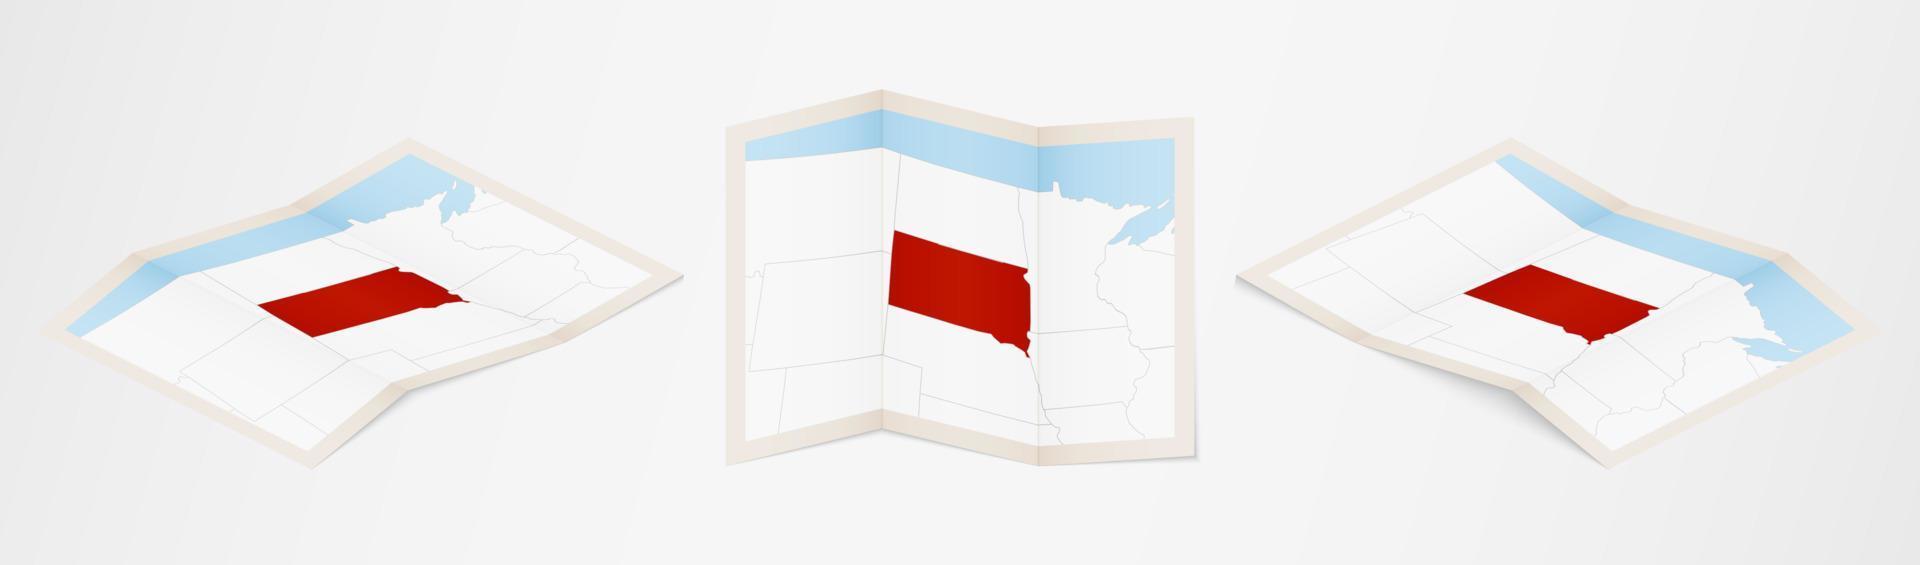 gevouwen kaart van zuiden dakota in drie verschillend versies. vector